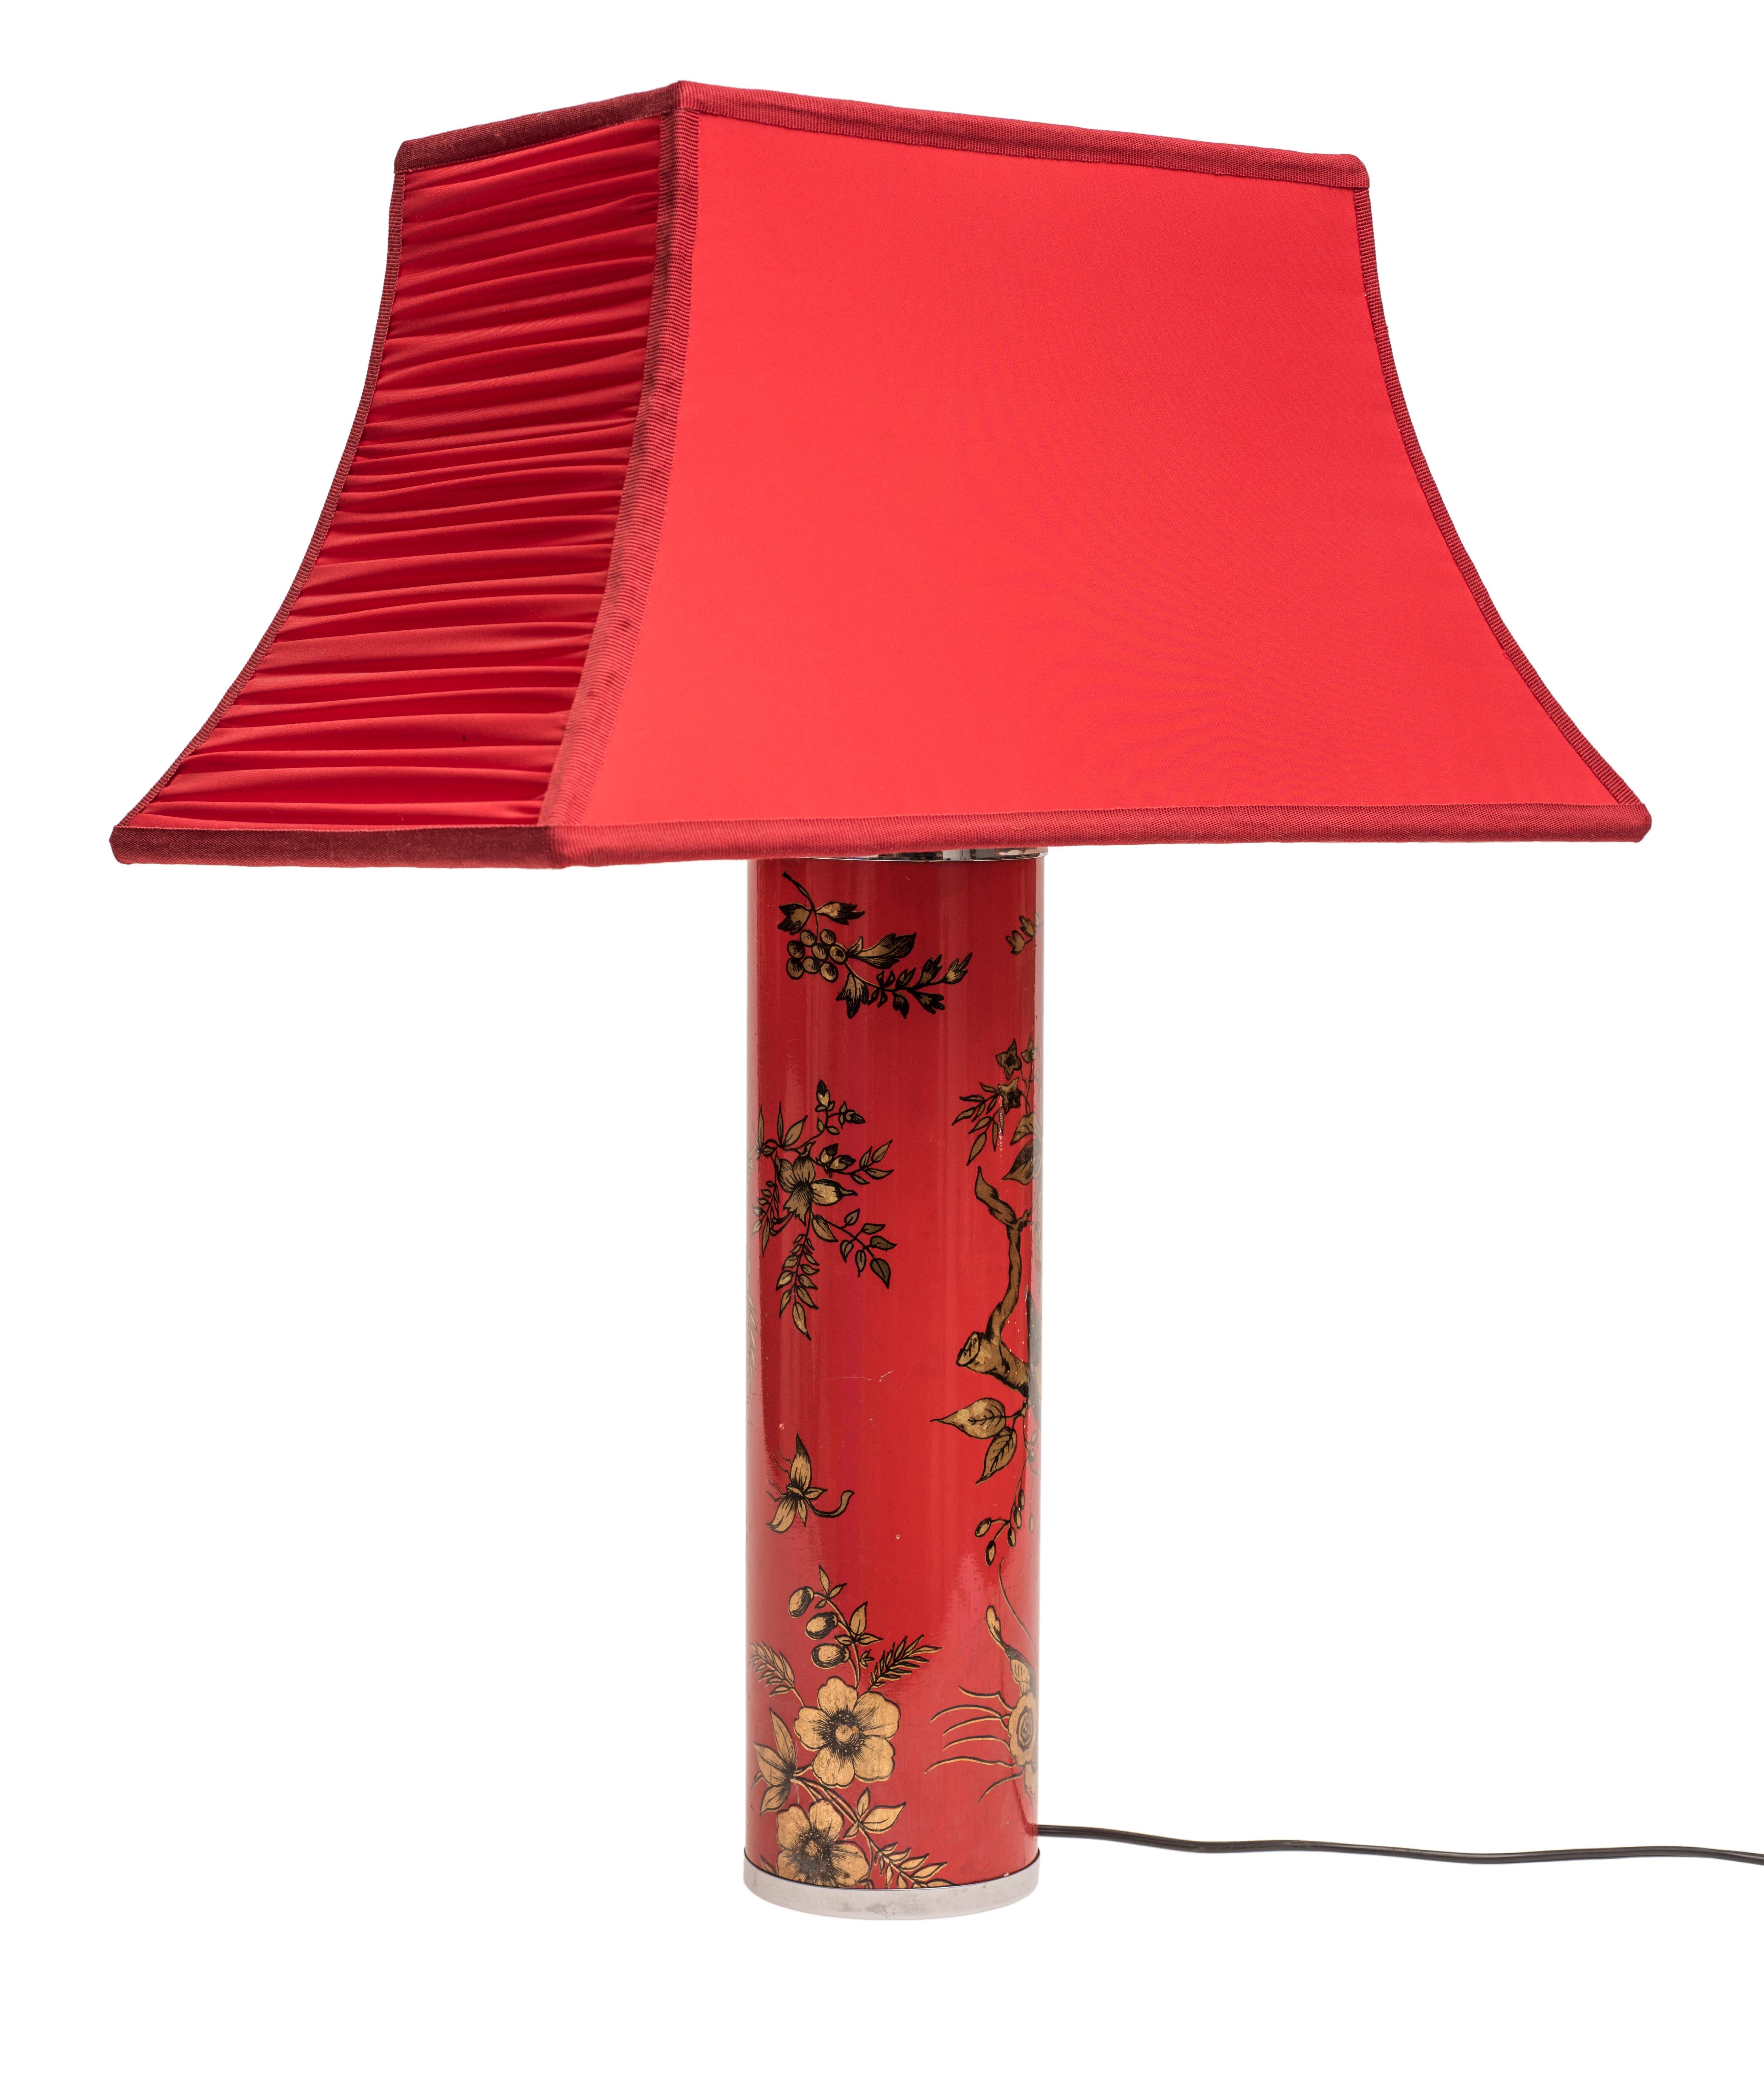 Die rote Lampe ist ein Originalentwurf von Piero Fornasetti aus den 1960er Jahren.

Originelle Metalllampe mit roter Lackierung und Blumendekoration in der chinesischen Technik 